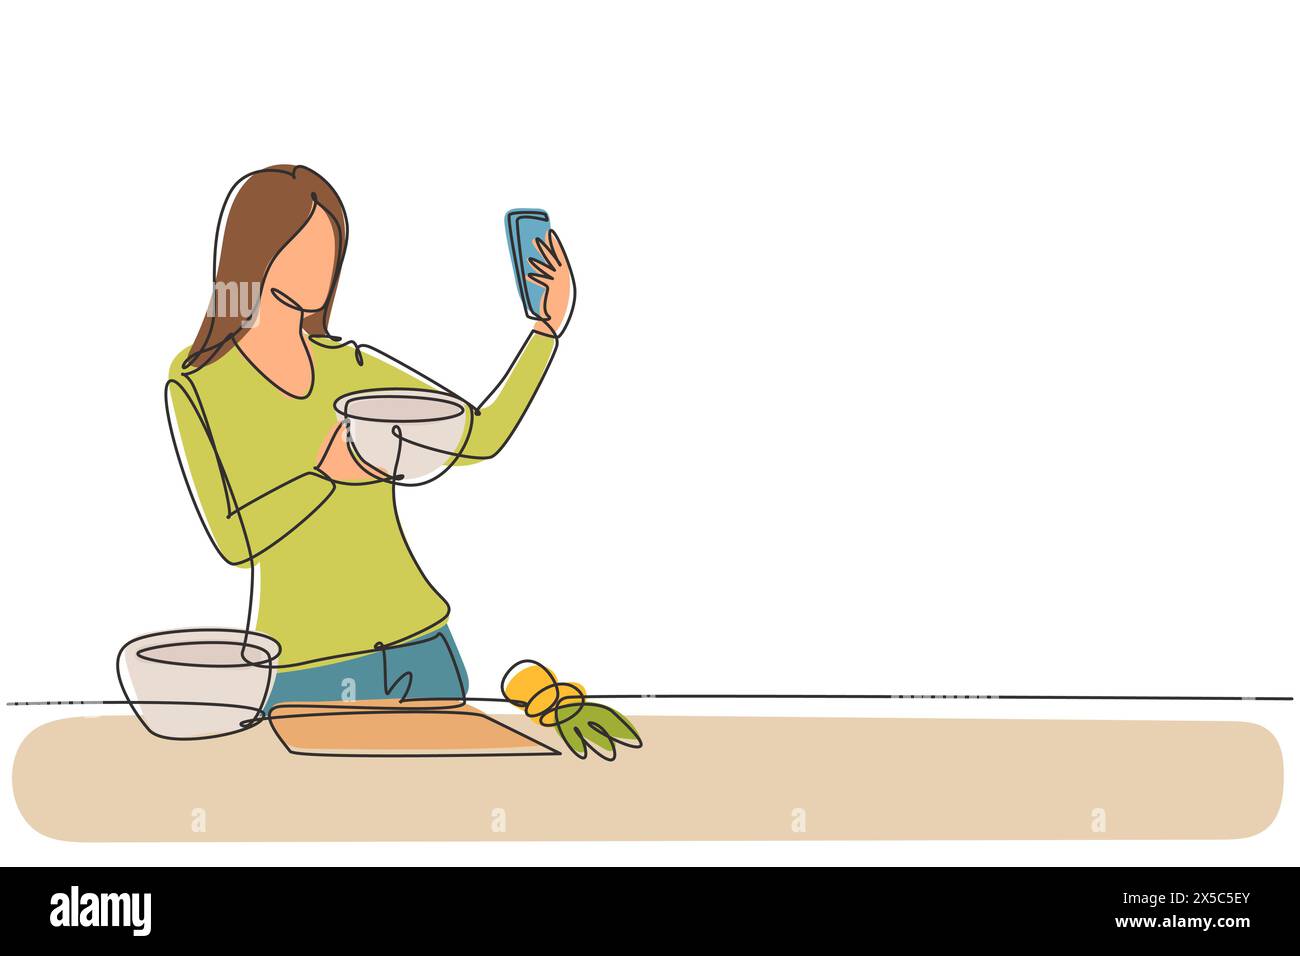 Une ligne continue dessinant jolie femme au foyer prenant selfie ou faisant un appel vidéo à l'aide de son smartphone tout en cuisinant une salade fraîche. Concept de nourriture saine. Illustration de Vecteur